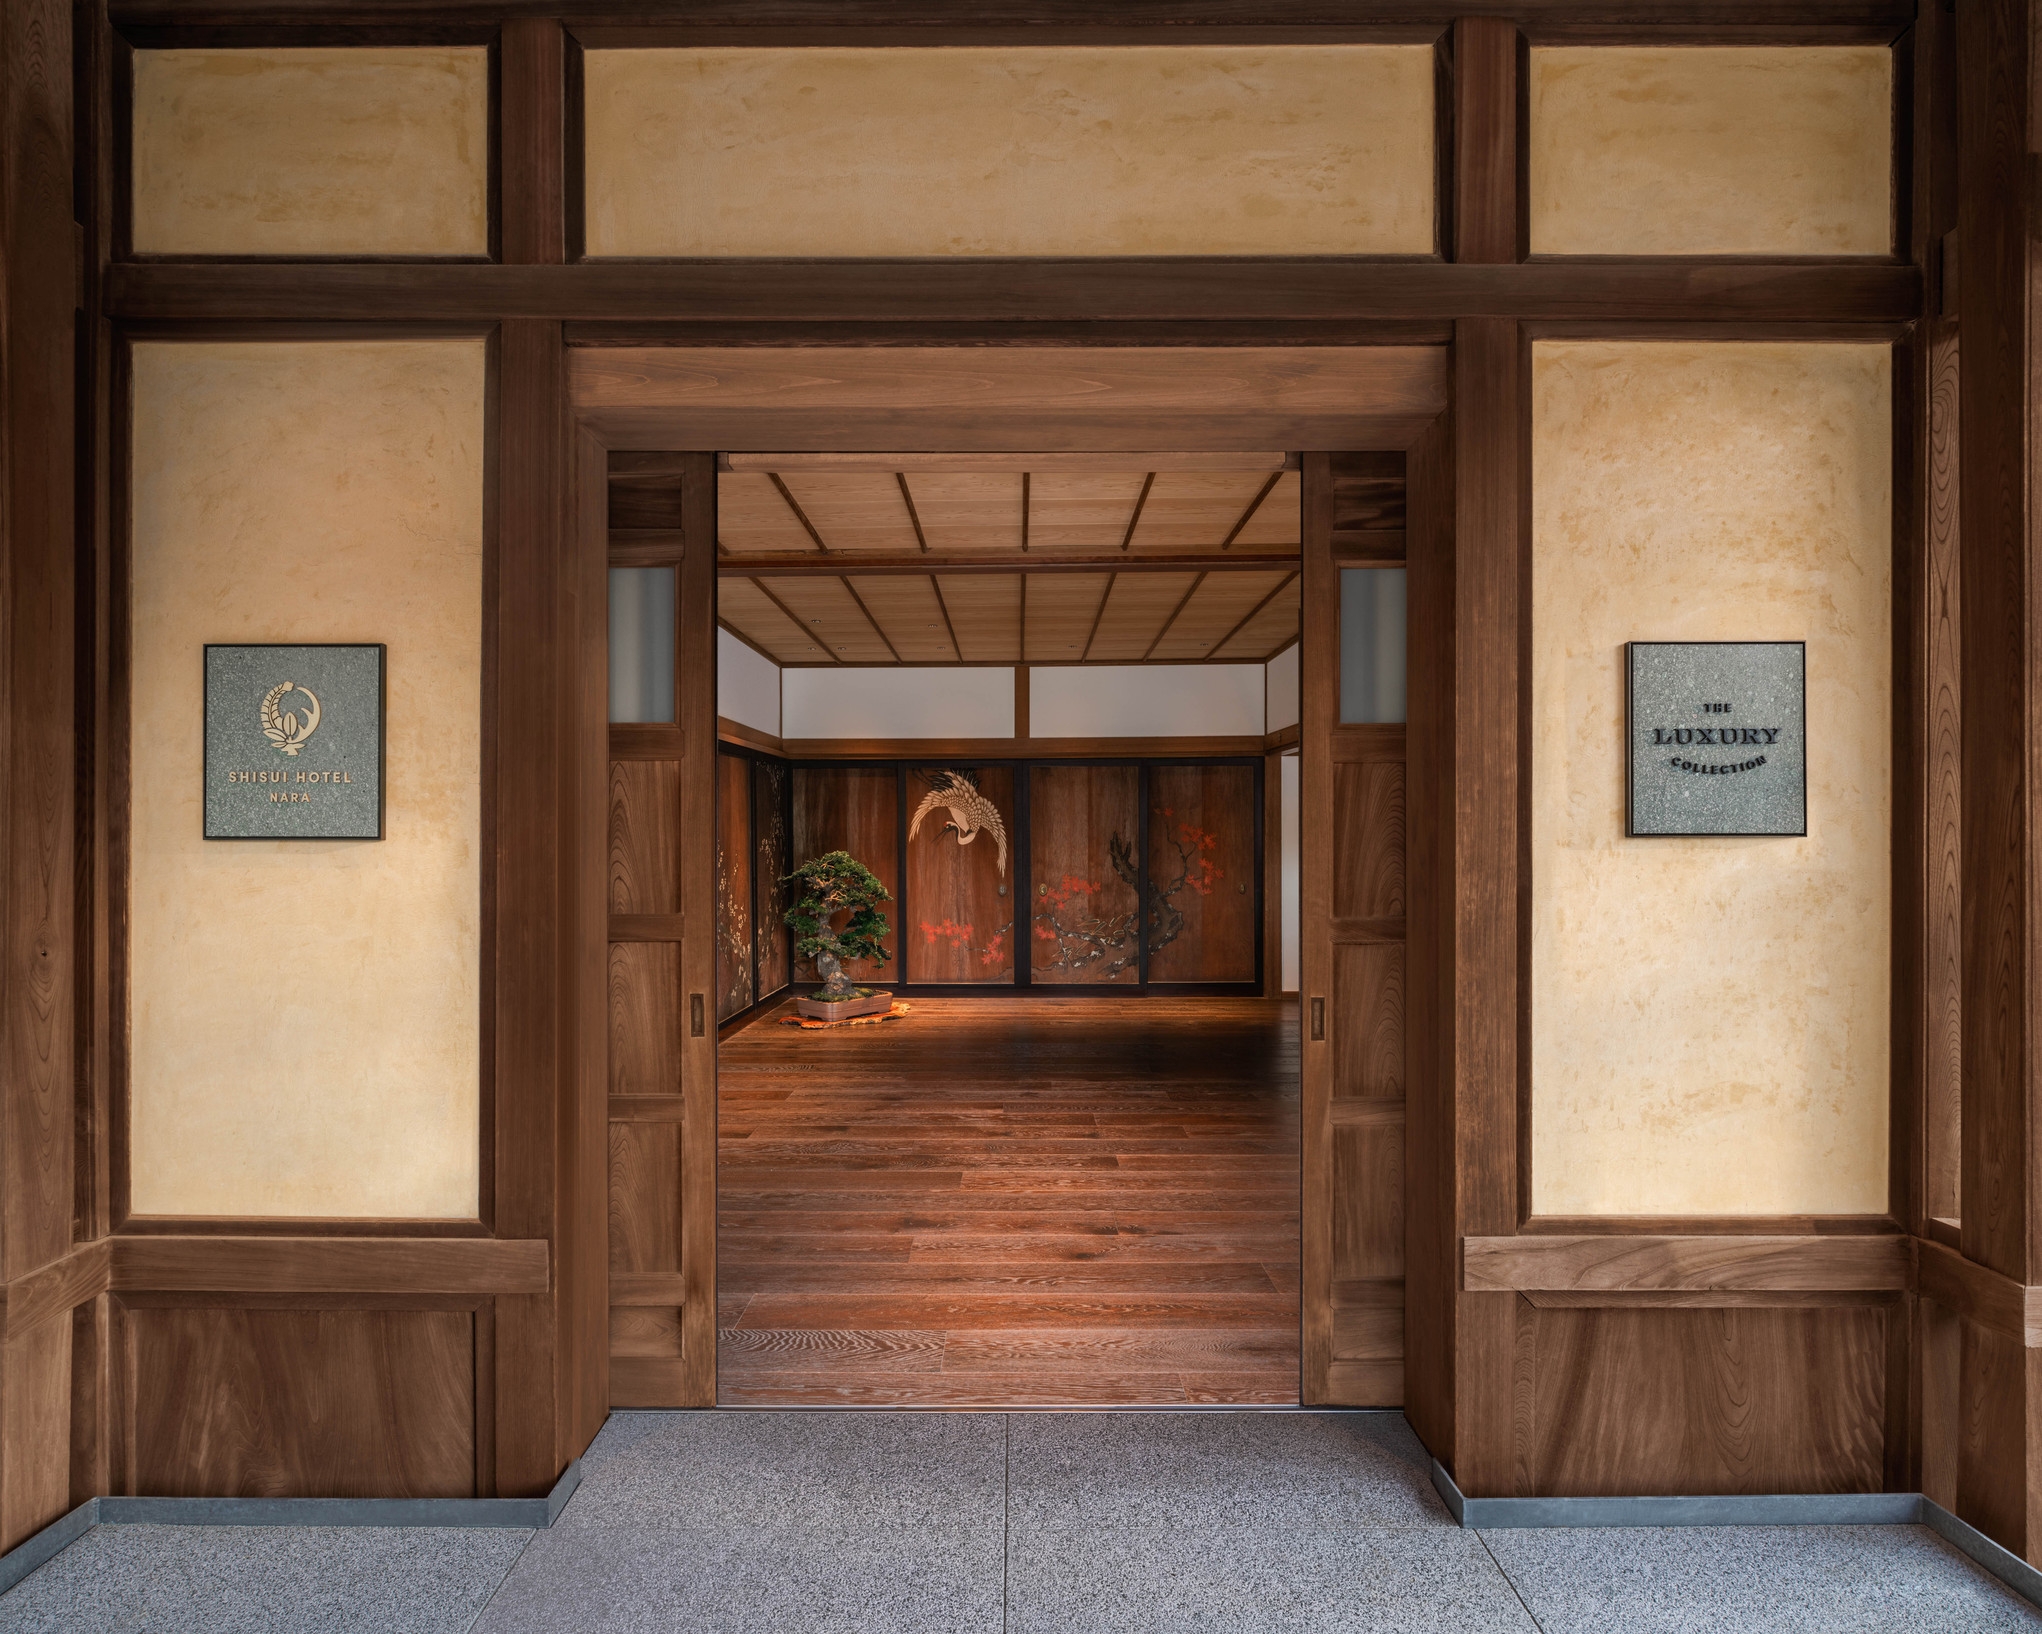 【お部屋のみ】緑に囲まれた清々しい古都・奈良でのご滞在を。